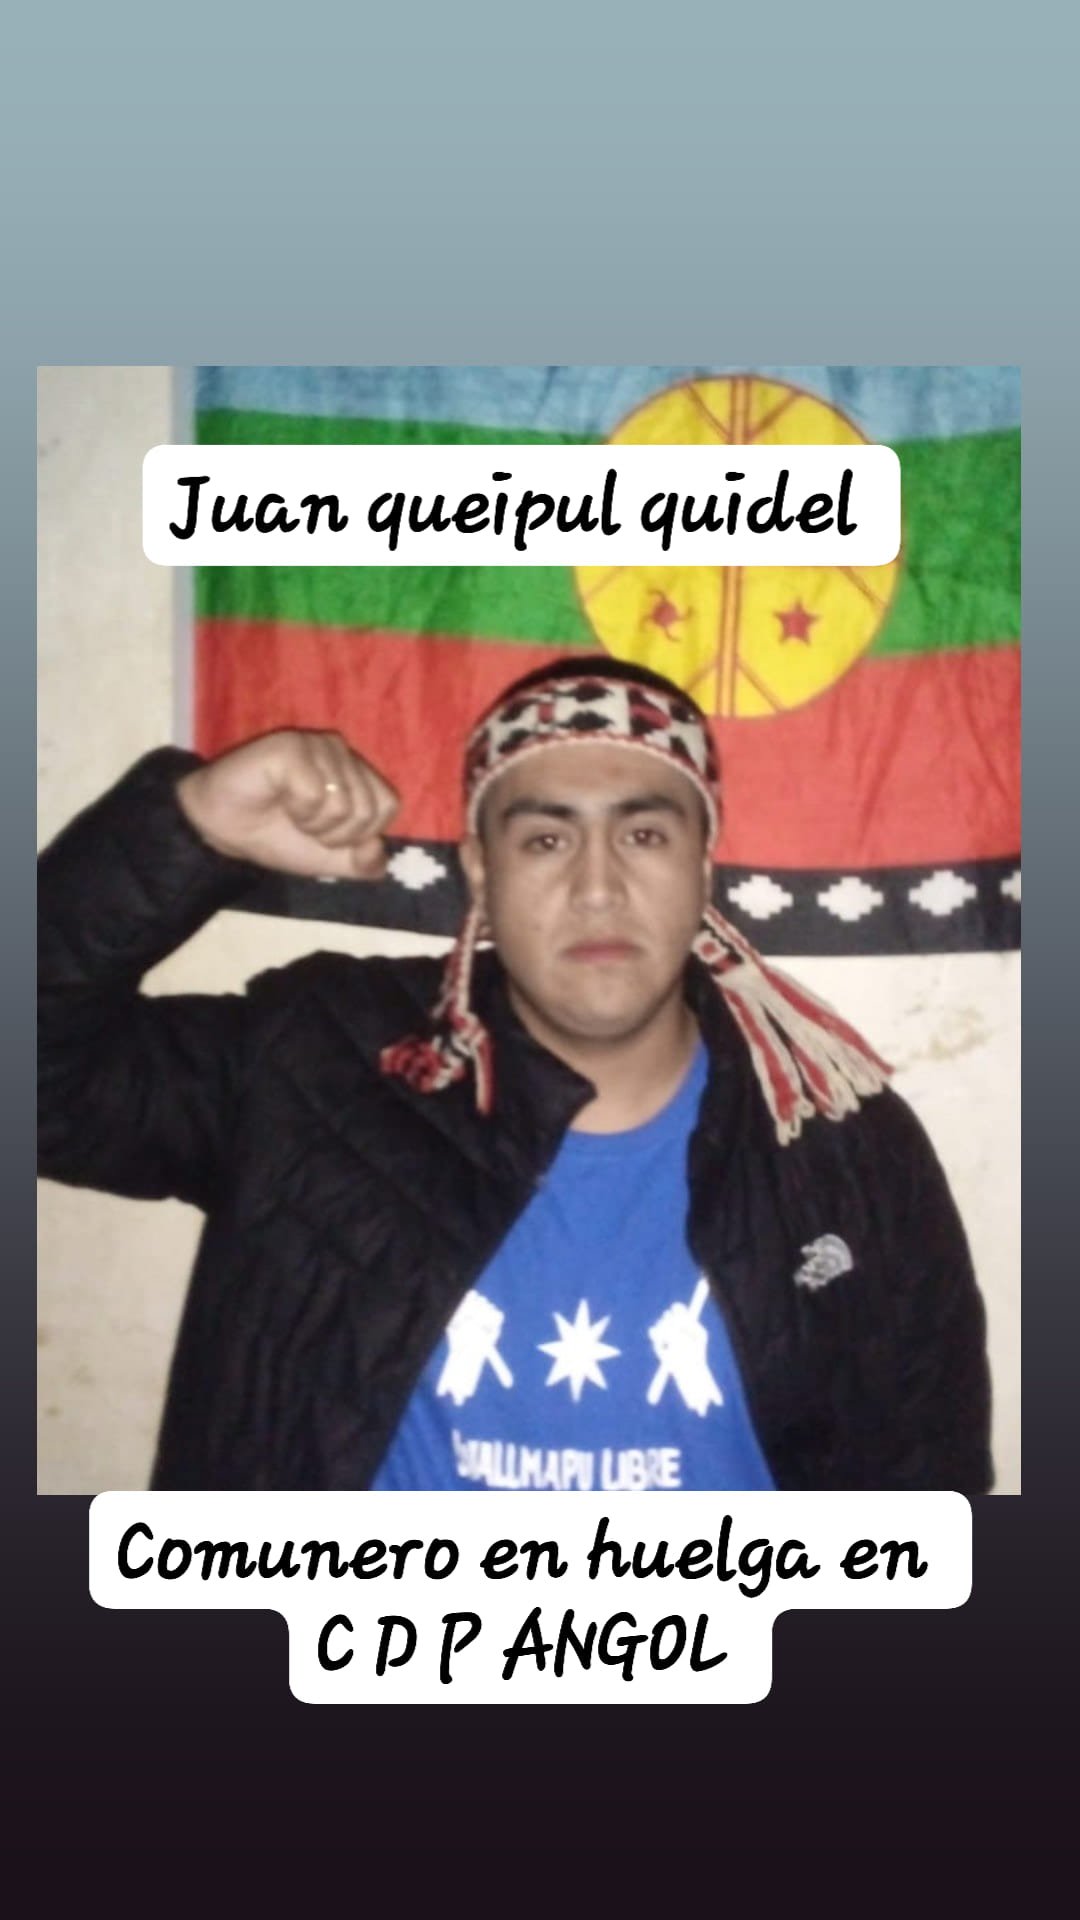 Puede ser una imagen de 1 persona y texto que dice "Juan queipul quidel SALLNAPIBE Comunero en huelga en CPP ANGOL"